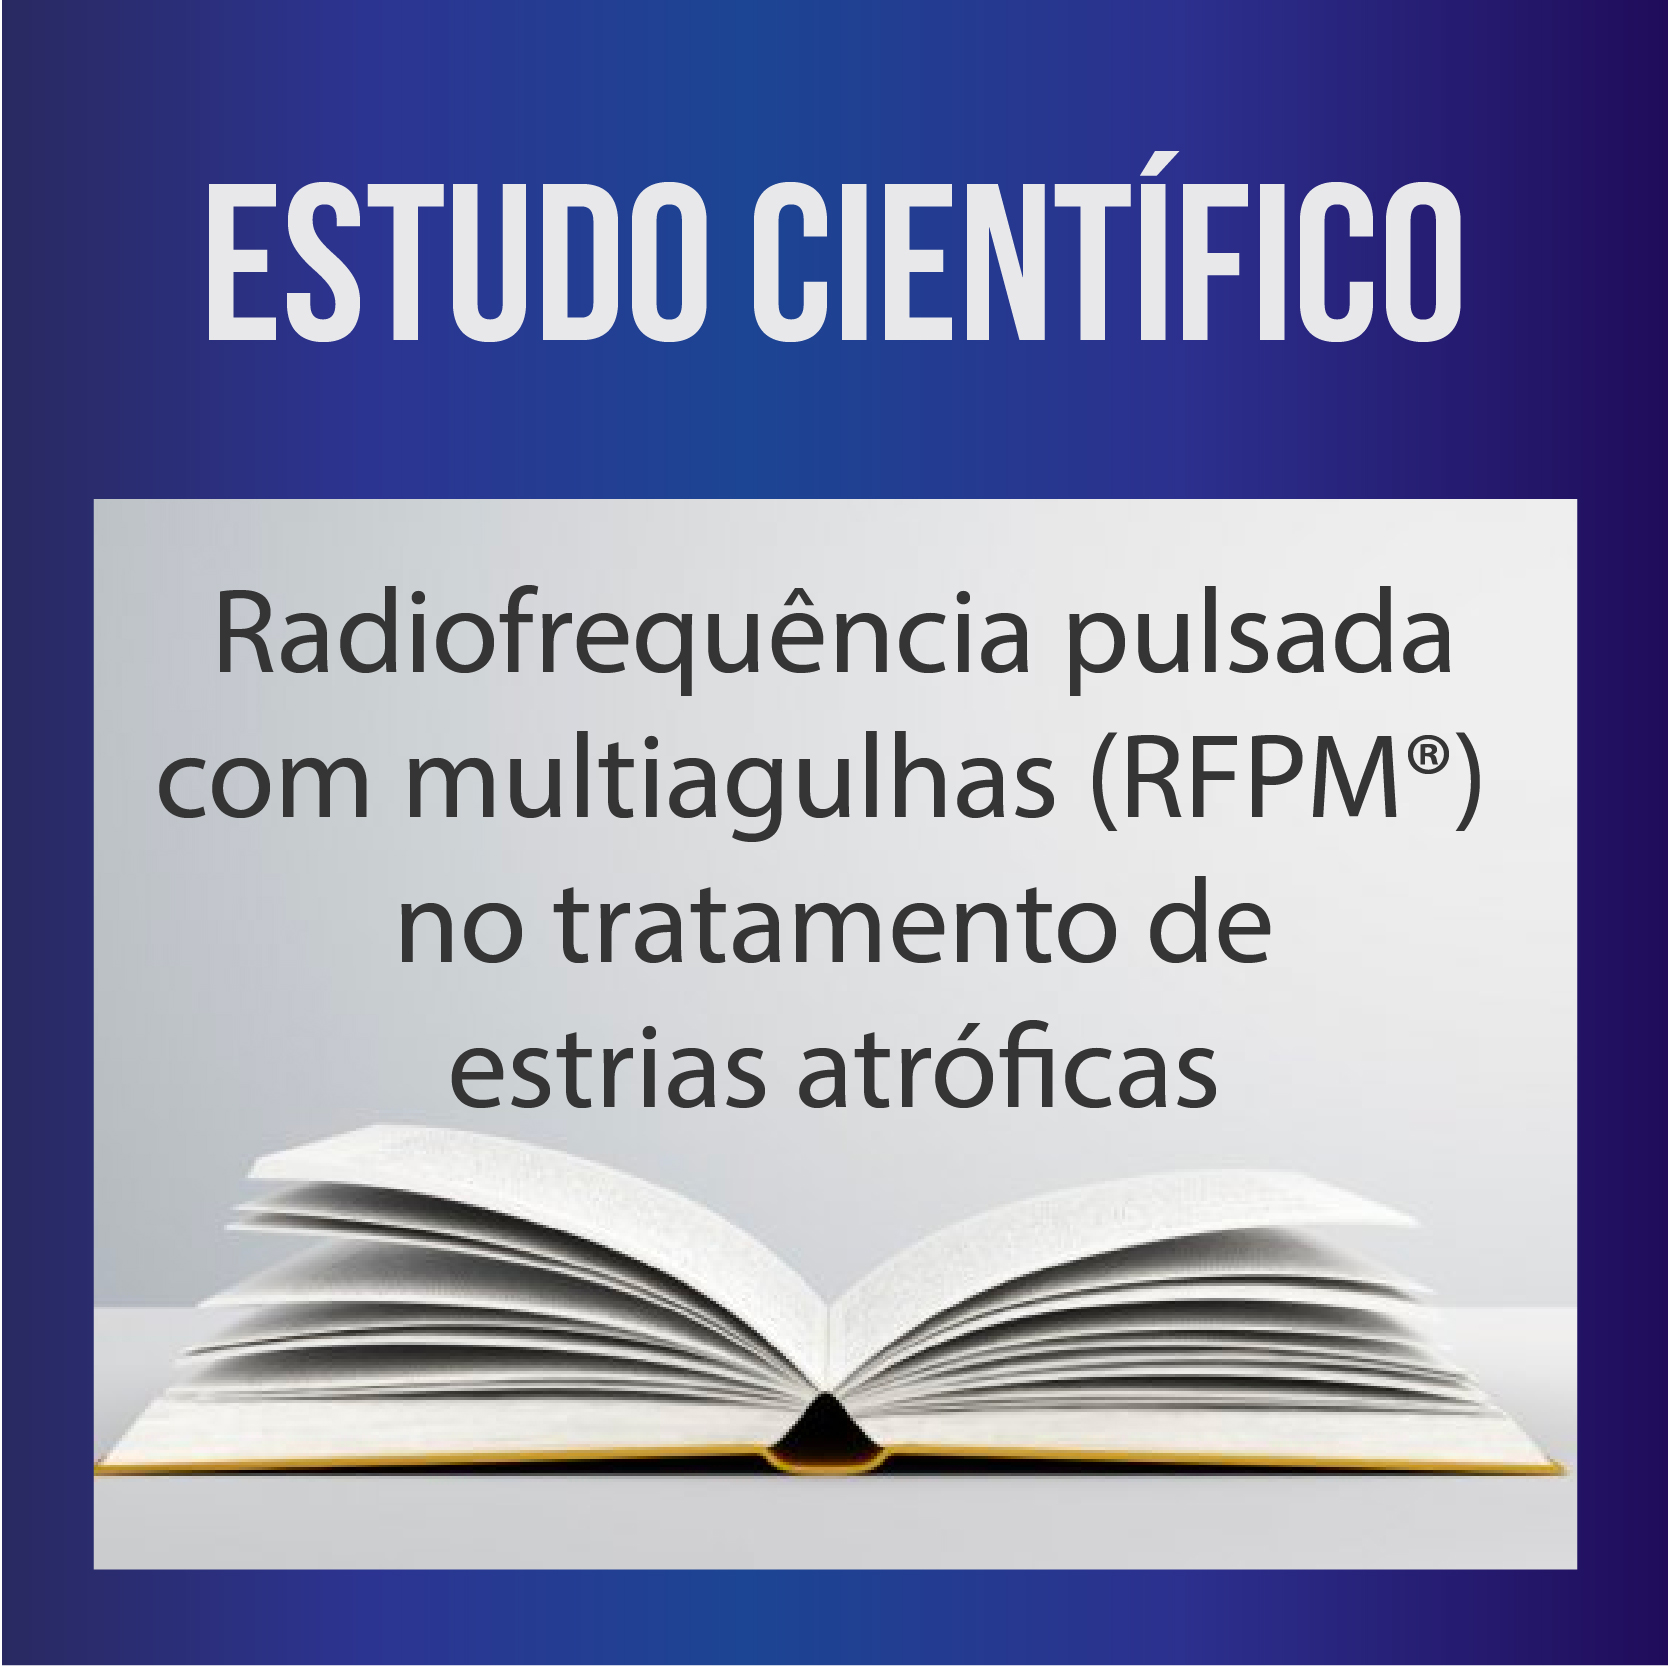 Radiofrequência pulsada com multiagulhas (RFPM) no tratamento de estrias atróficas